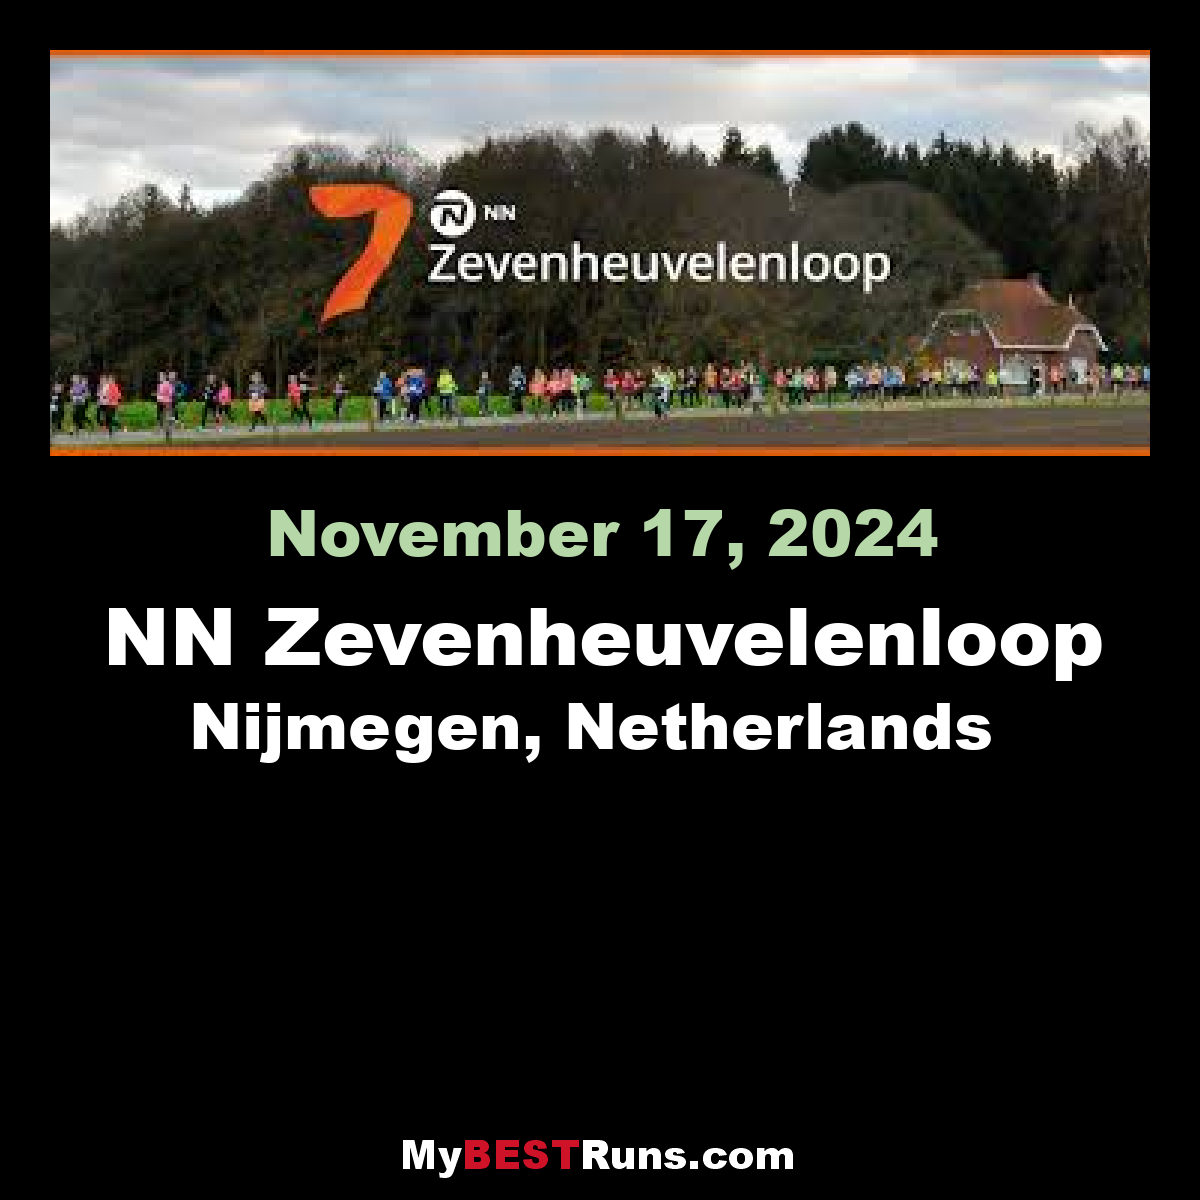 The NN Zevenheuvelenloop